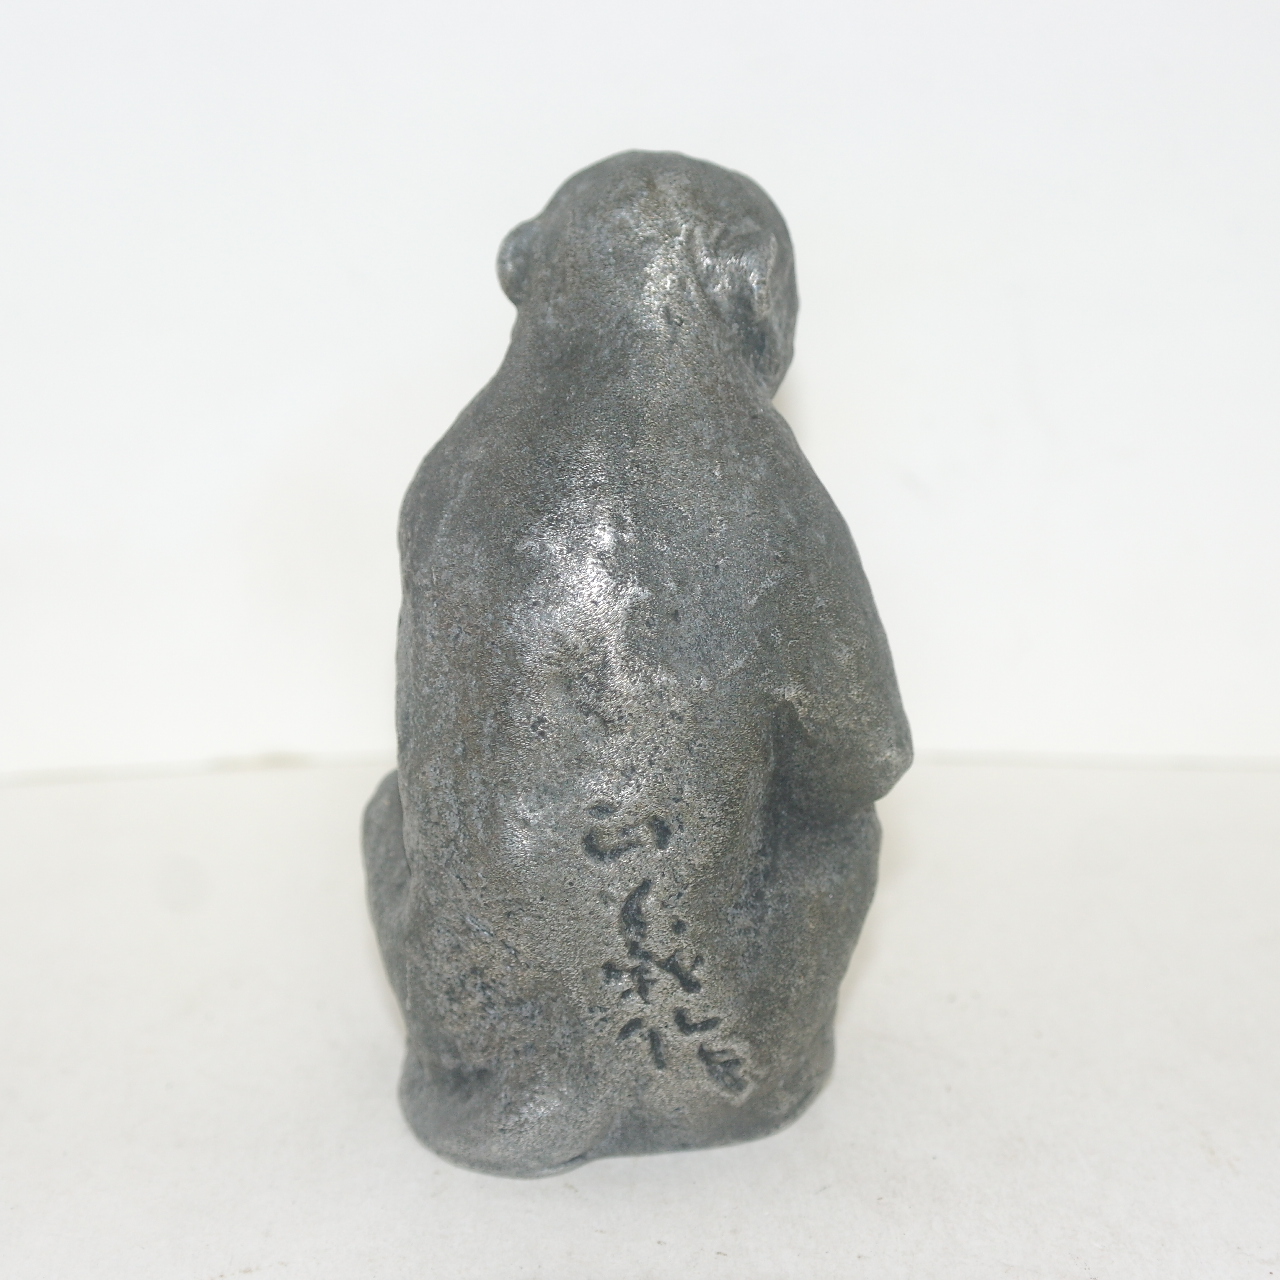 작가의 수결이 있는 금속합금재질로된 묵직한 원숭이 조각상